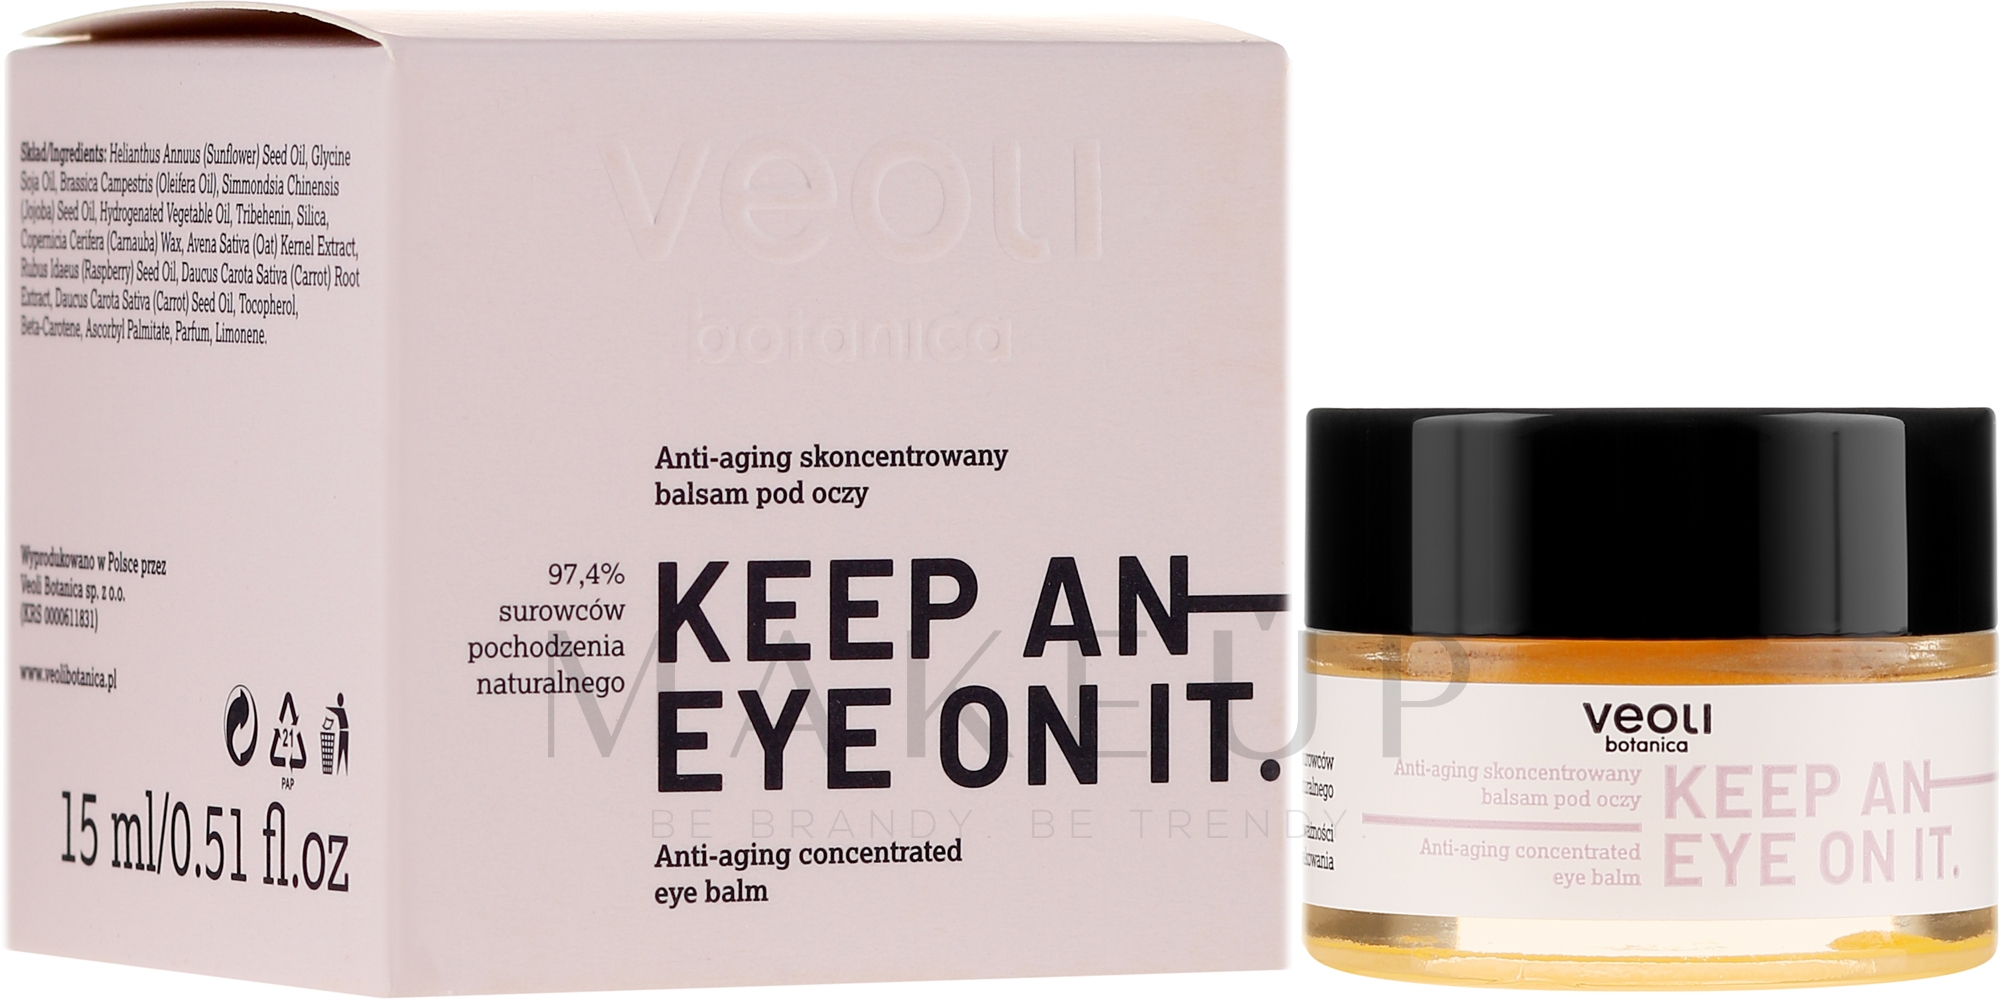 Konzentrierter Anti-Aging Balsam für die Augenpartie - Veoli Botanica Anti-aging Concentrated Eye Balm Keep An Eye On It — Bild 15 ml